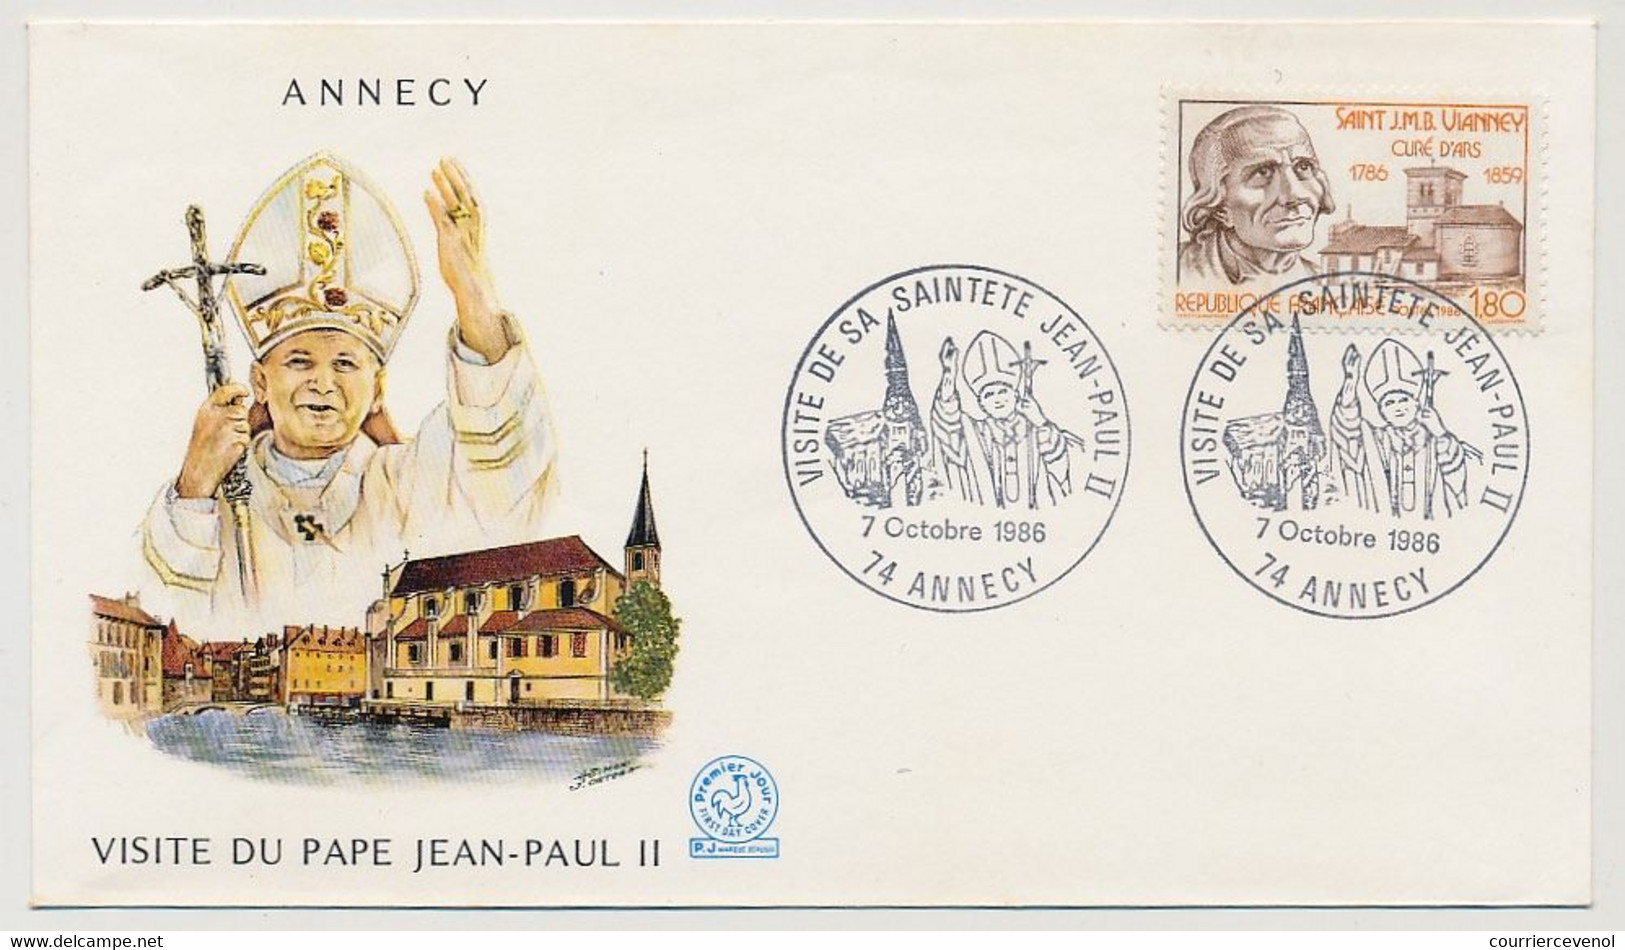 FRANCE - 6 documents "Visite du pape Jean Paul II" en France - 1986